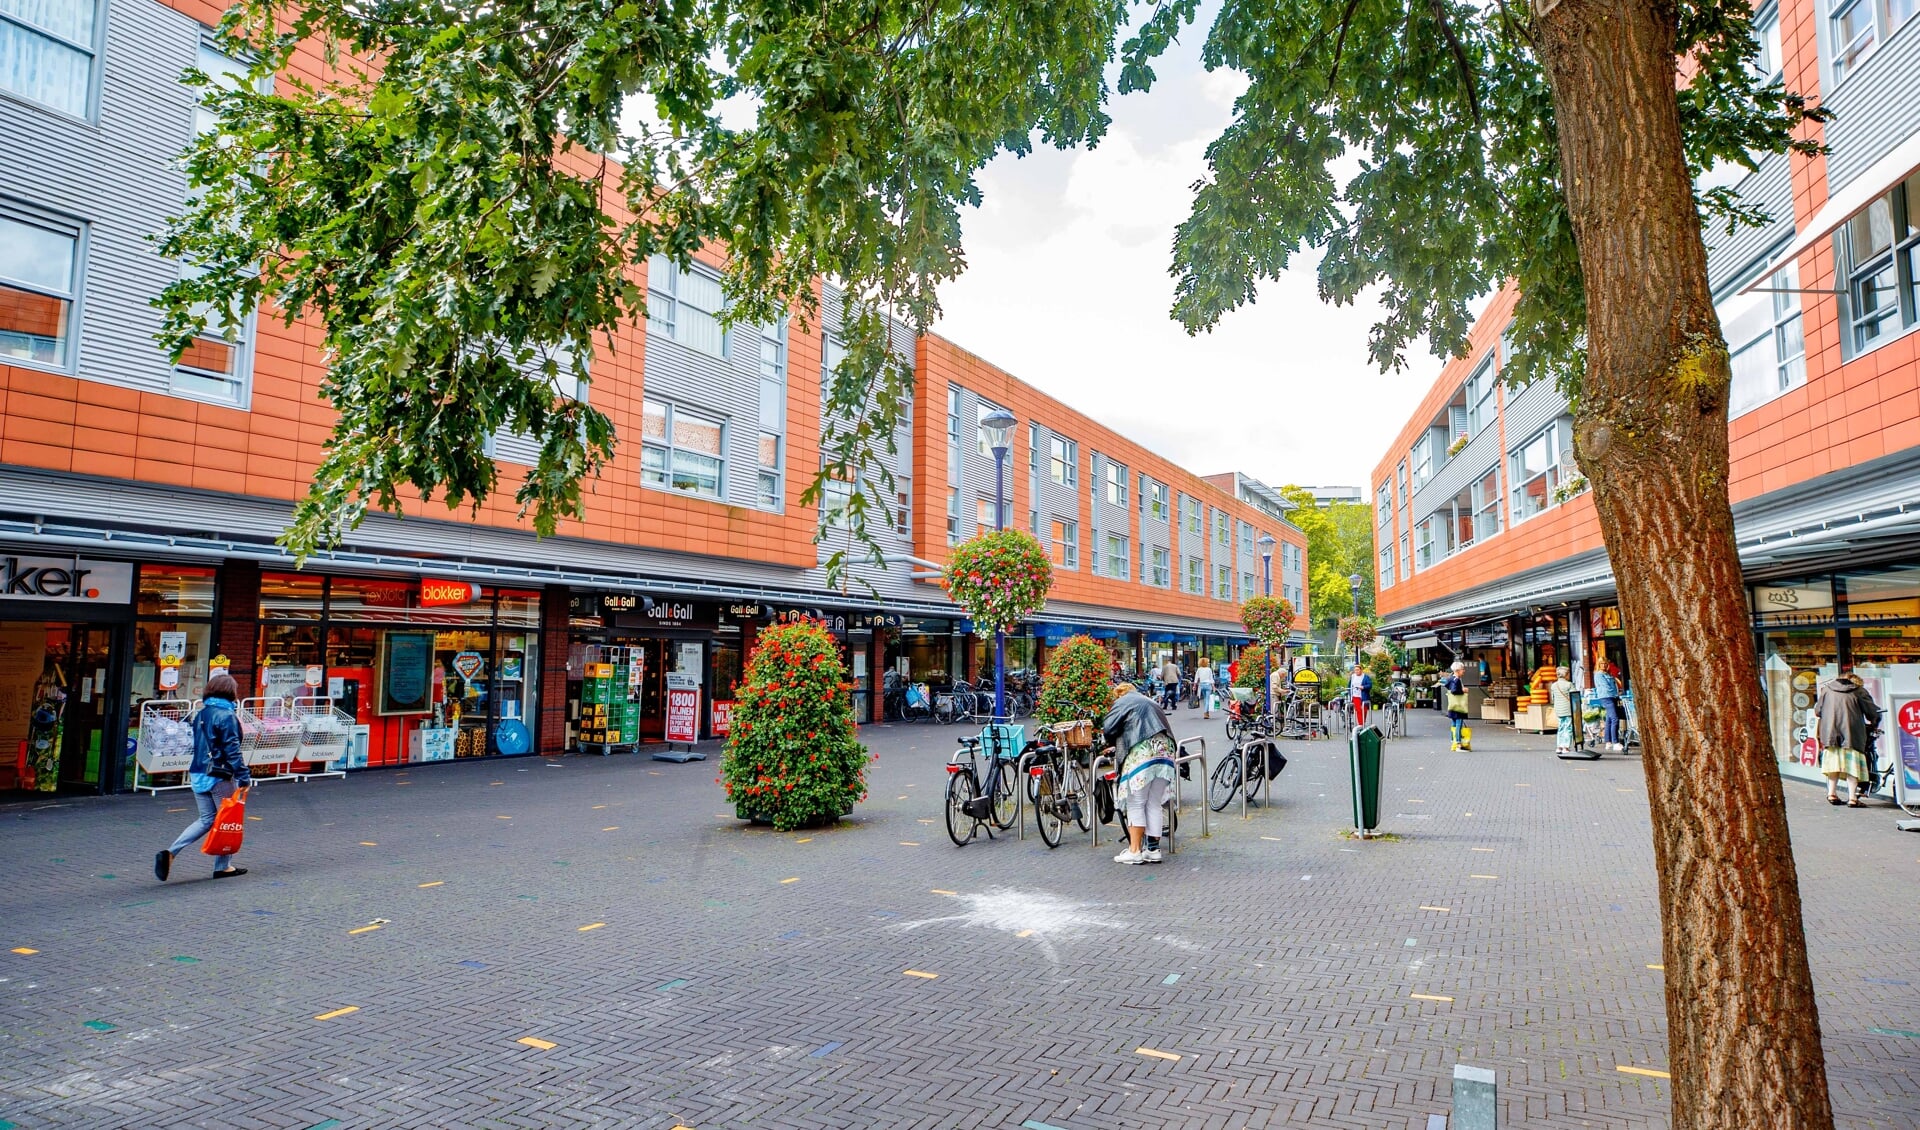 De omgeving rondom winkelcentrum Seinhorst is één van de genoemde locaties.